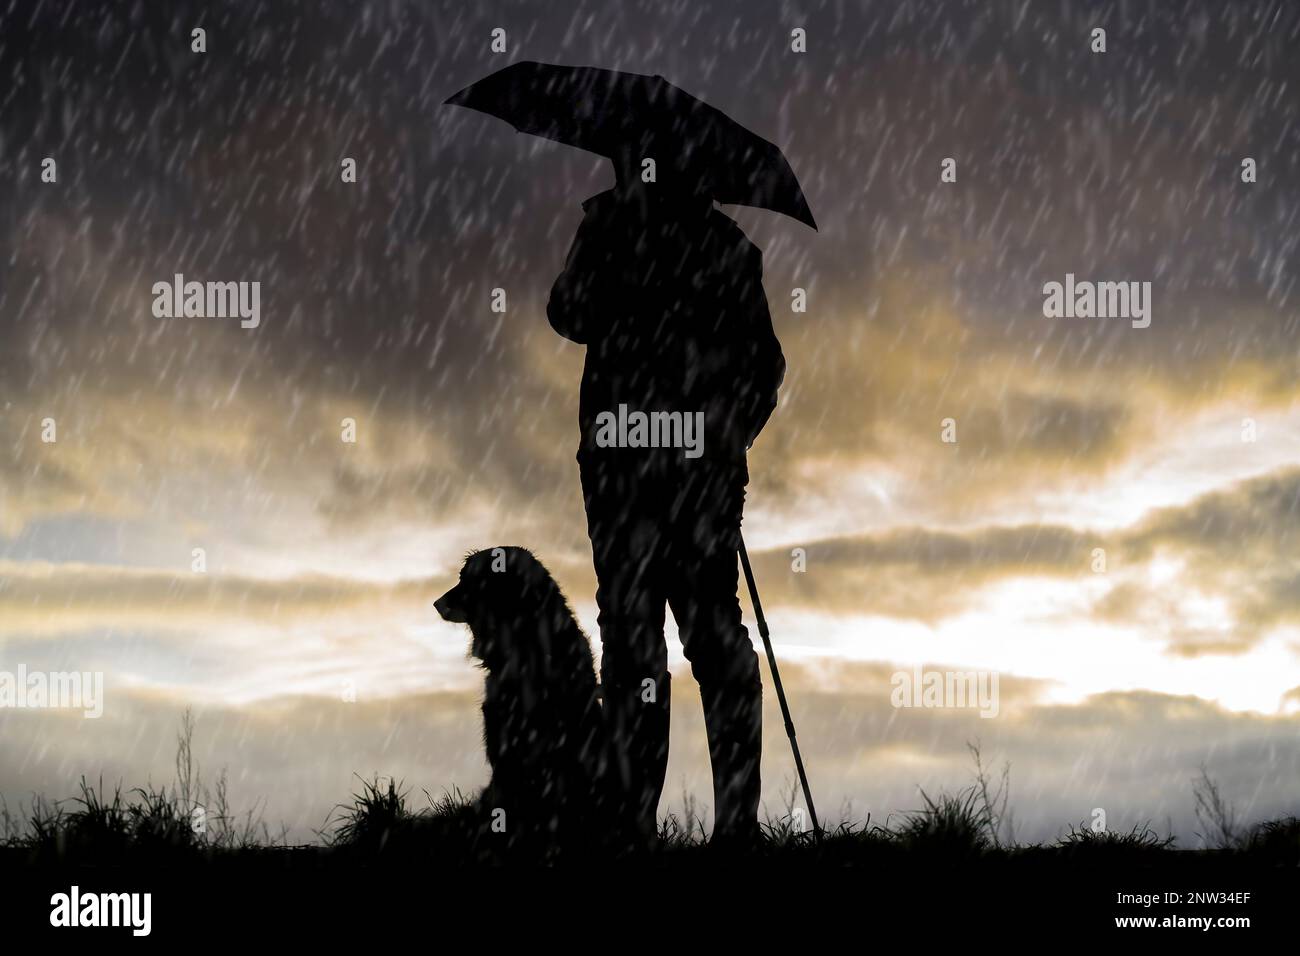 Eine Dame hält zusammen mit ihrem Hund einen Regenschirm am britischen Landhügel, beide in Silhouette vor dem Sonnenuntergang bei Abenddämmerung und beobachtet den strömenden Regen. Stockfoto